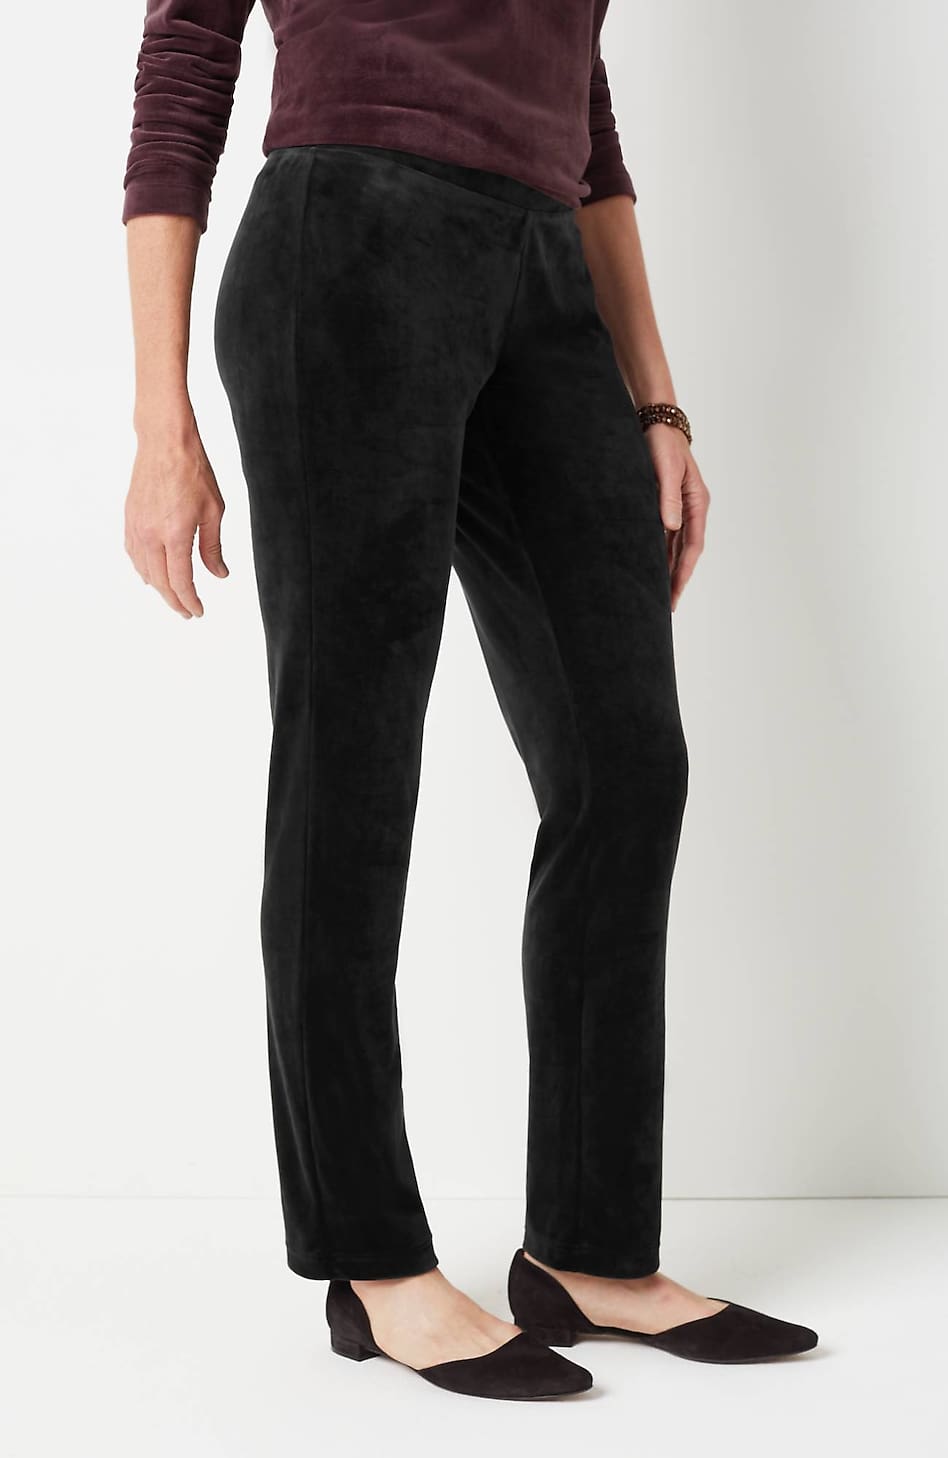 NWT J.Jill Womens Medium Crushed Velour Full Leg Velvet Lounge Pants Rose  Taupe